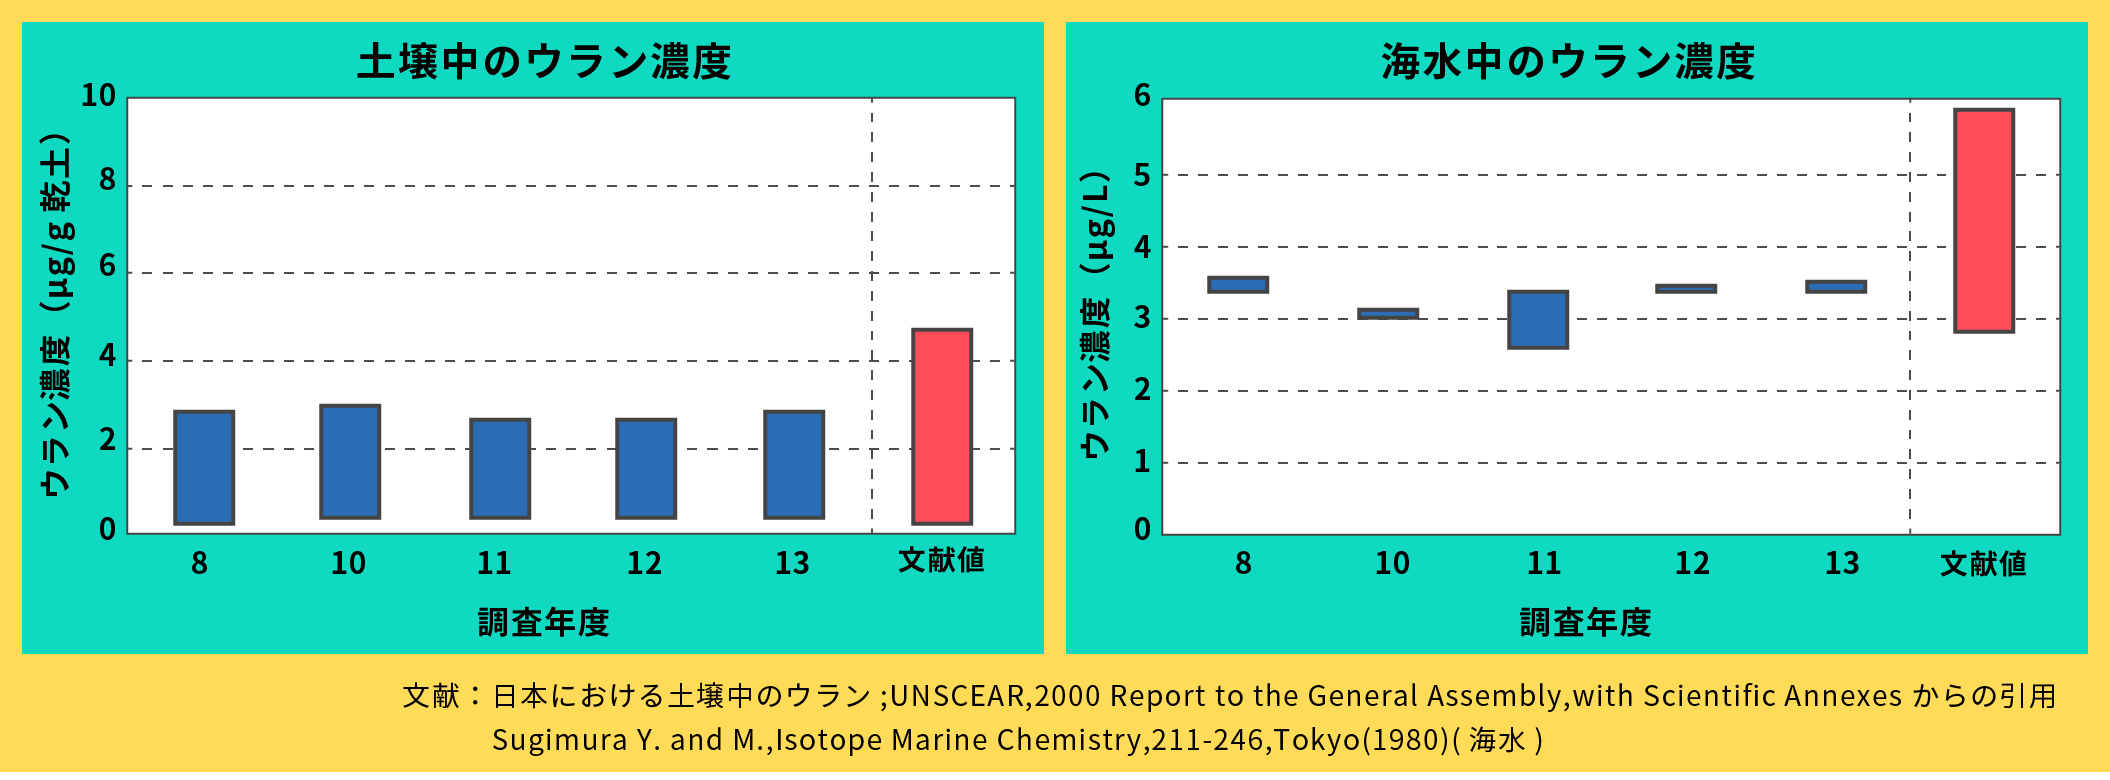 日本における土壌・海水中のウラン濃度